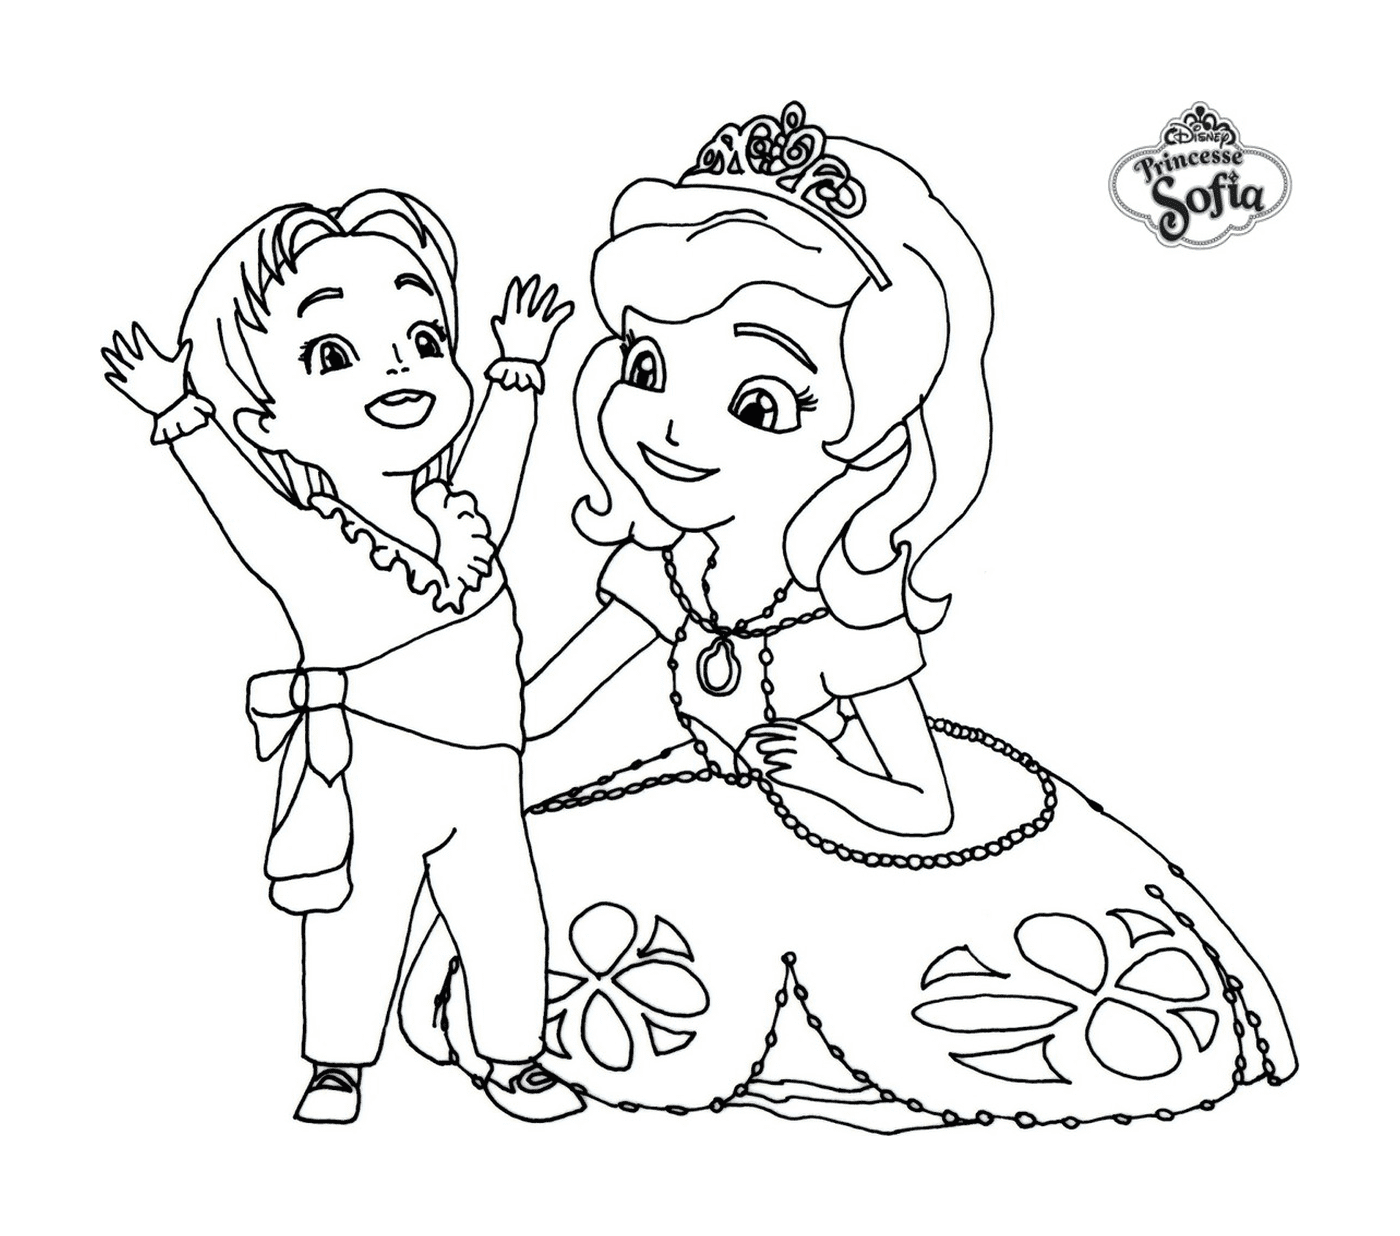  Principessa Sofia di Disney con un bambino 